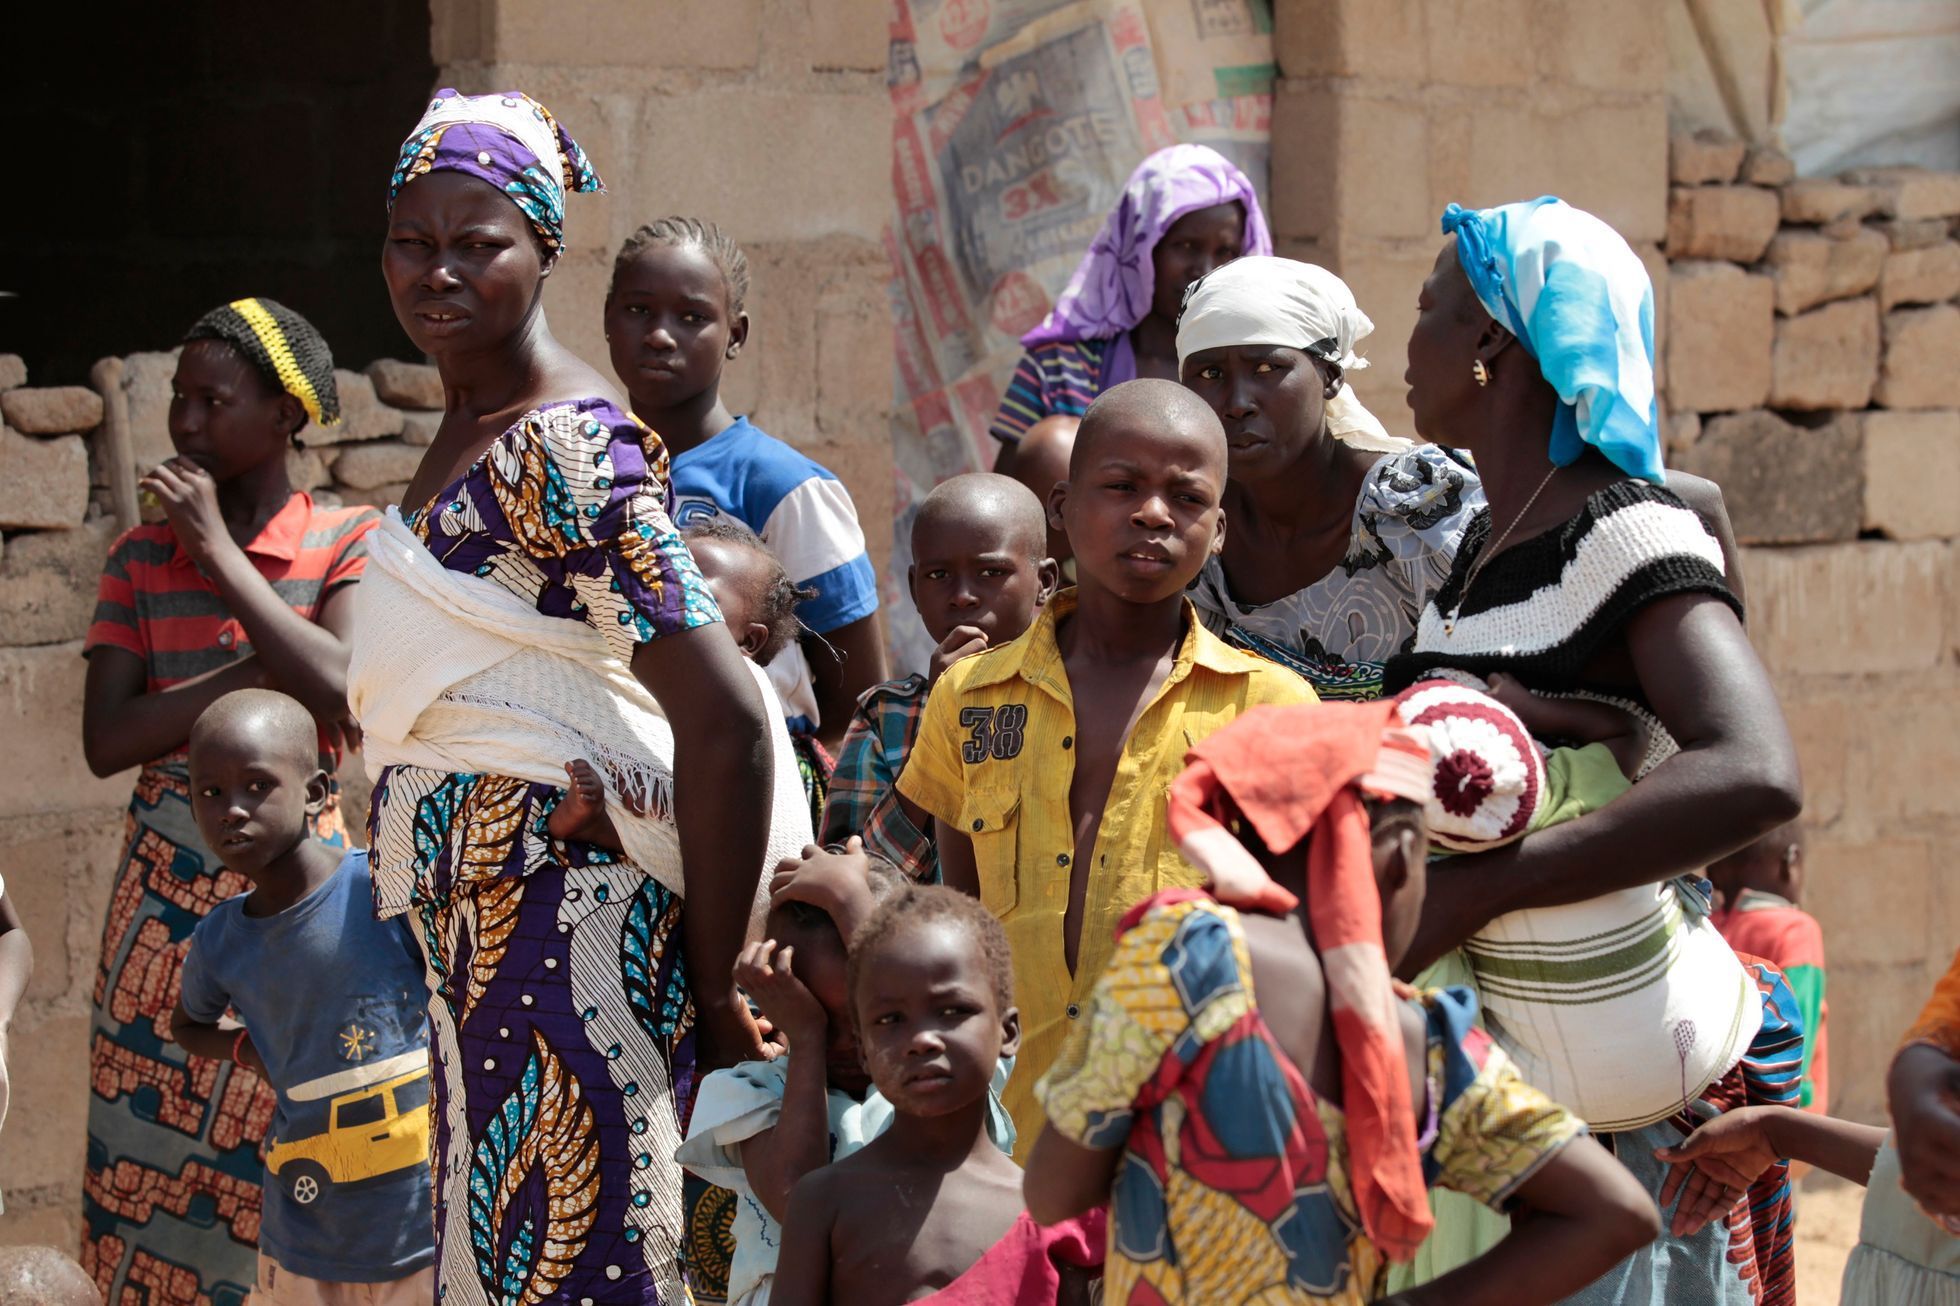 Rodina prchající před násilnostmi Boko Haram.